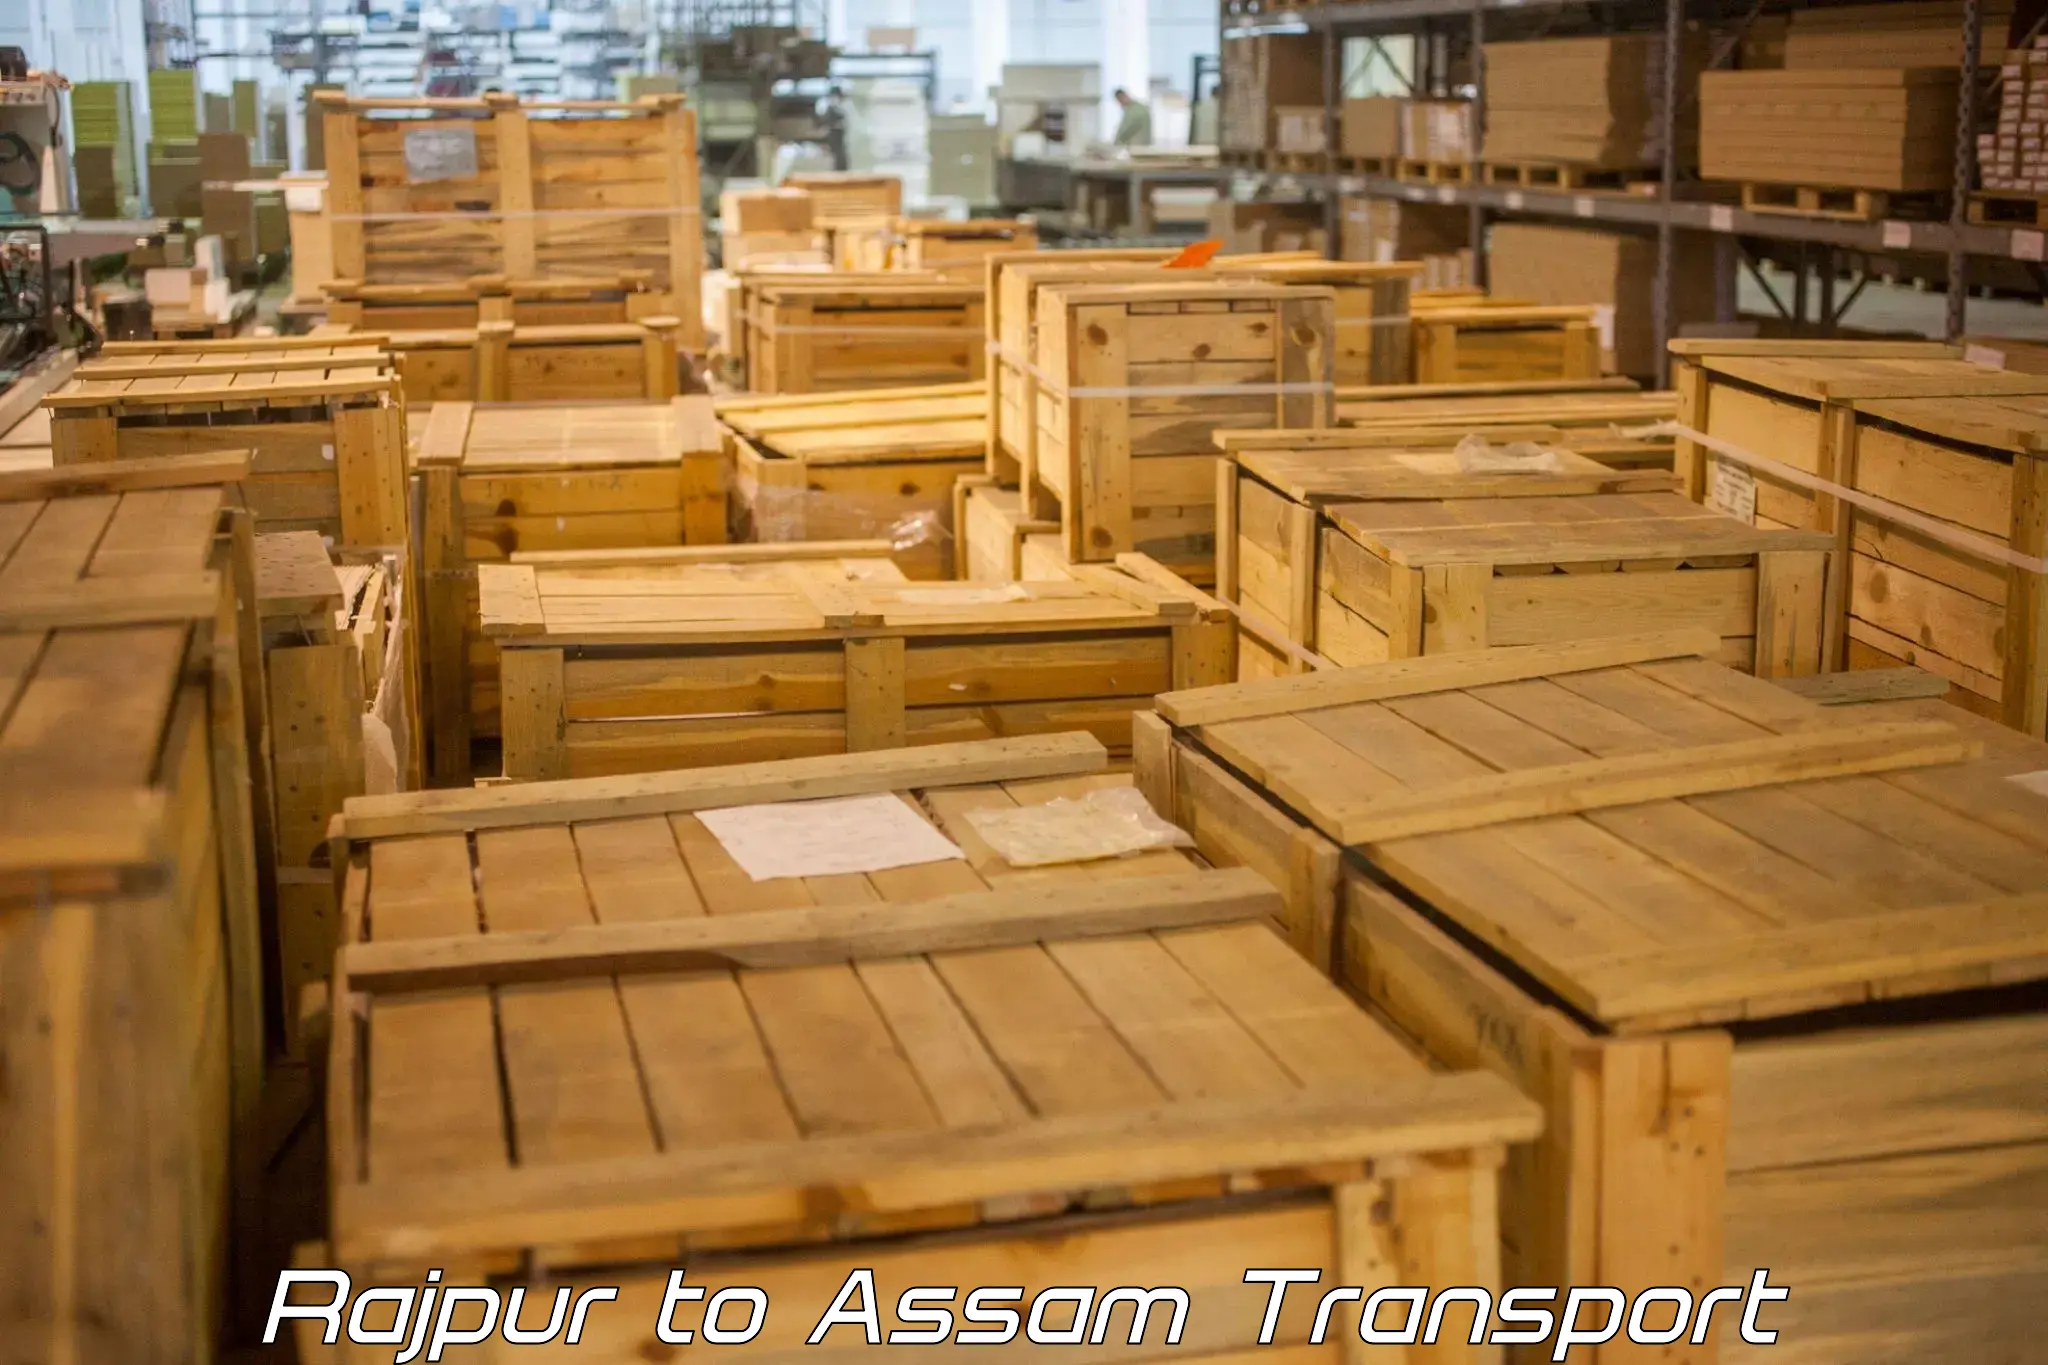 Interstate goods transport Rajpur to Lala Assam